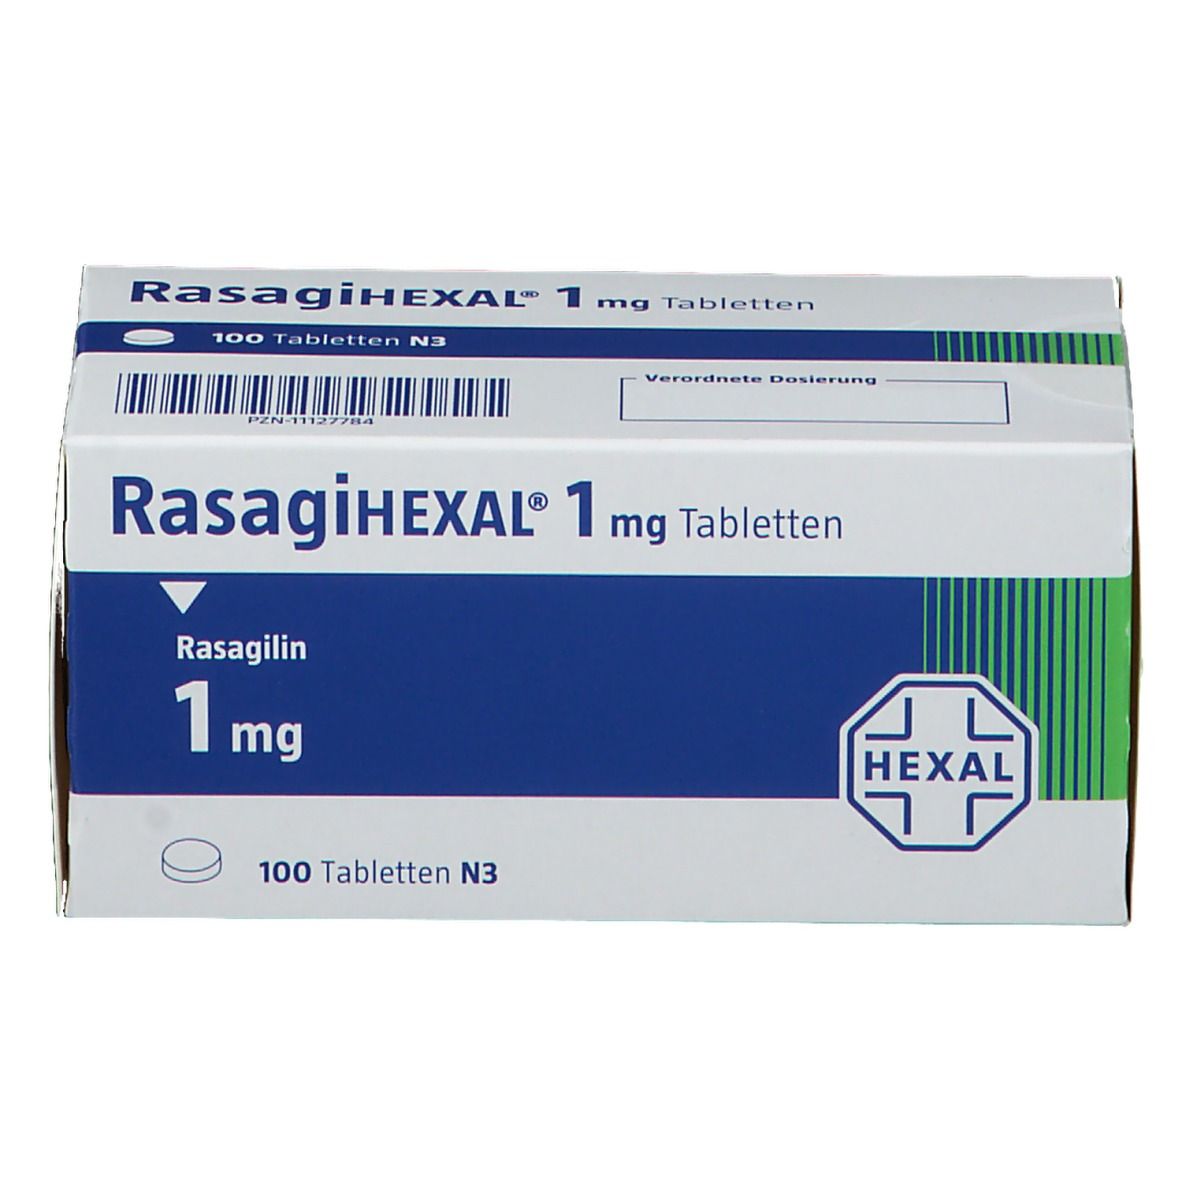 RasagiHEXAL® 1 mg